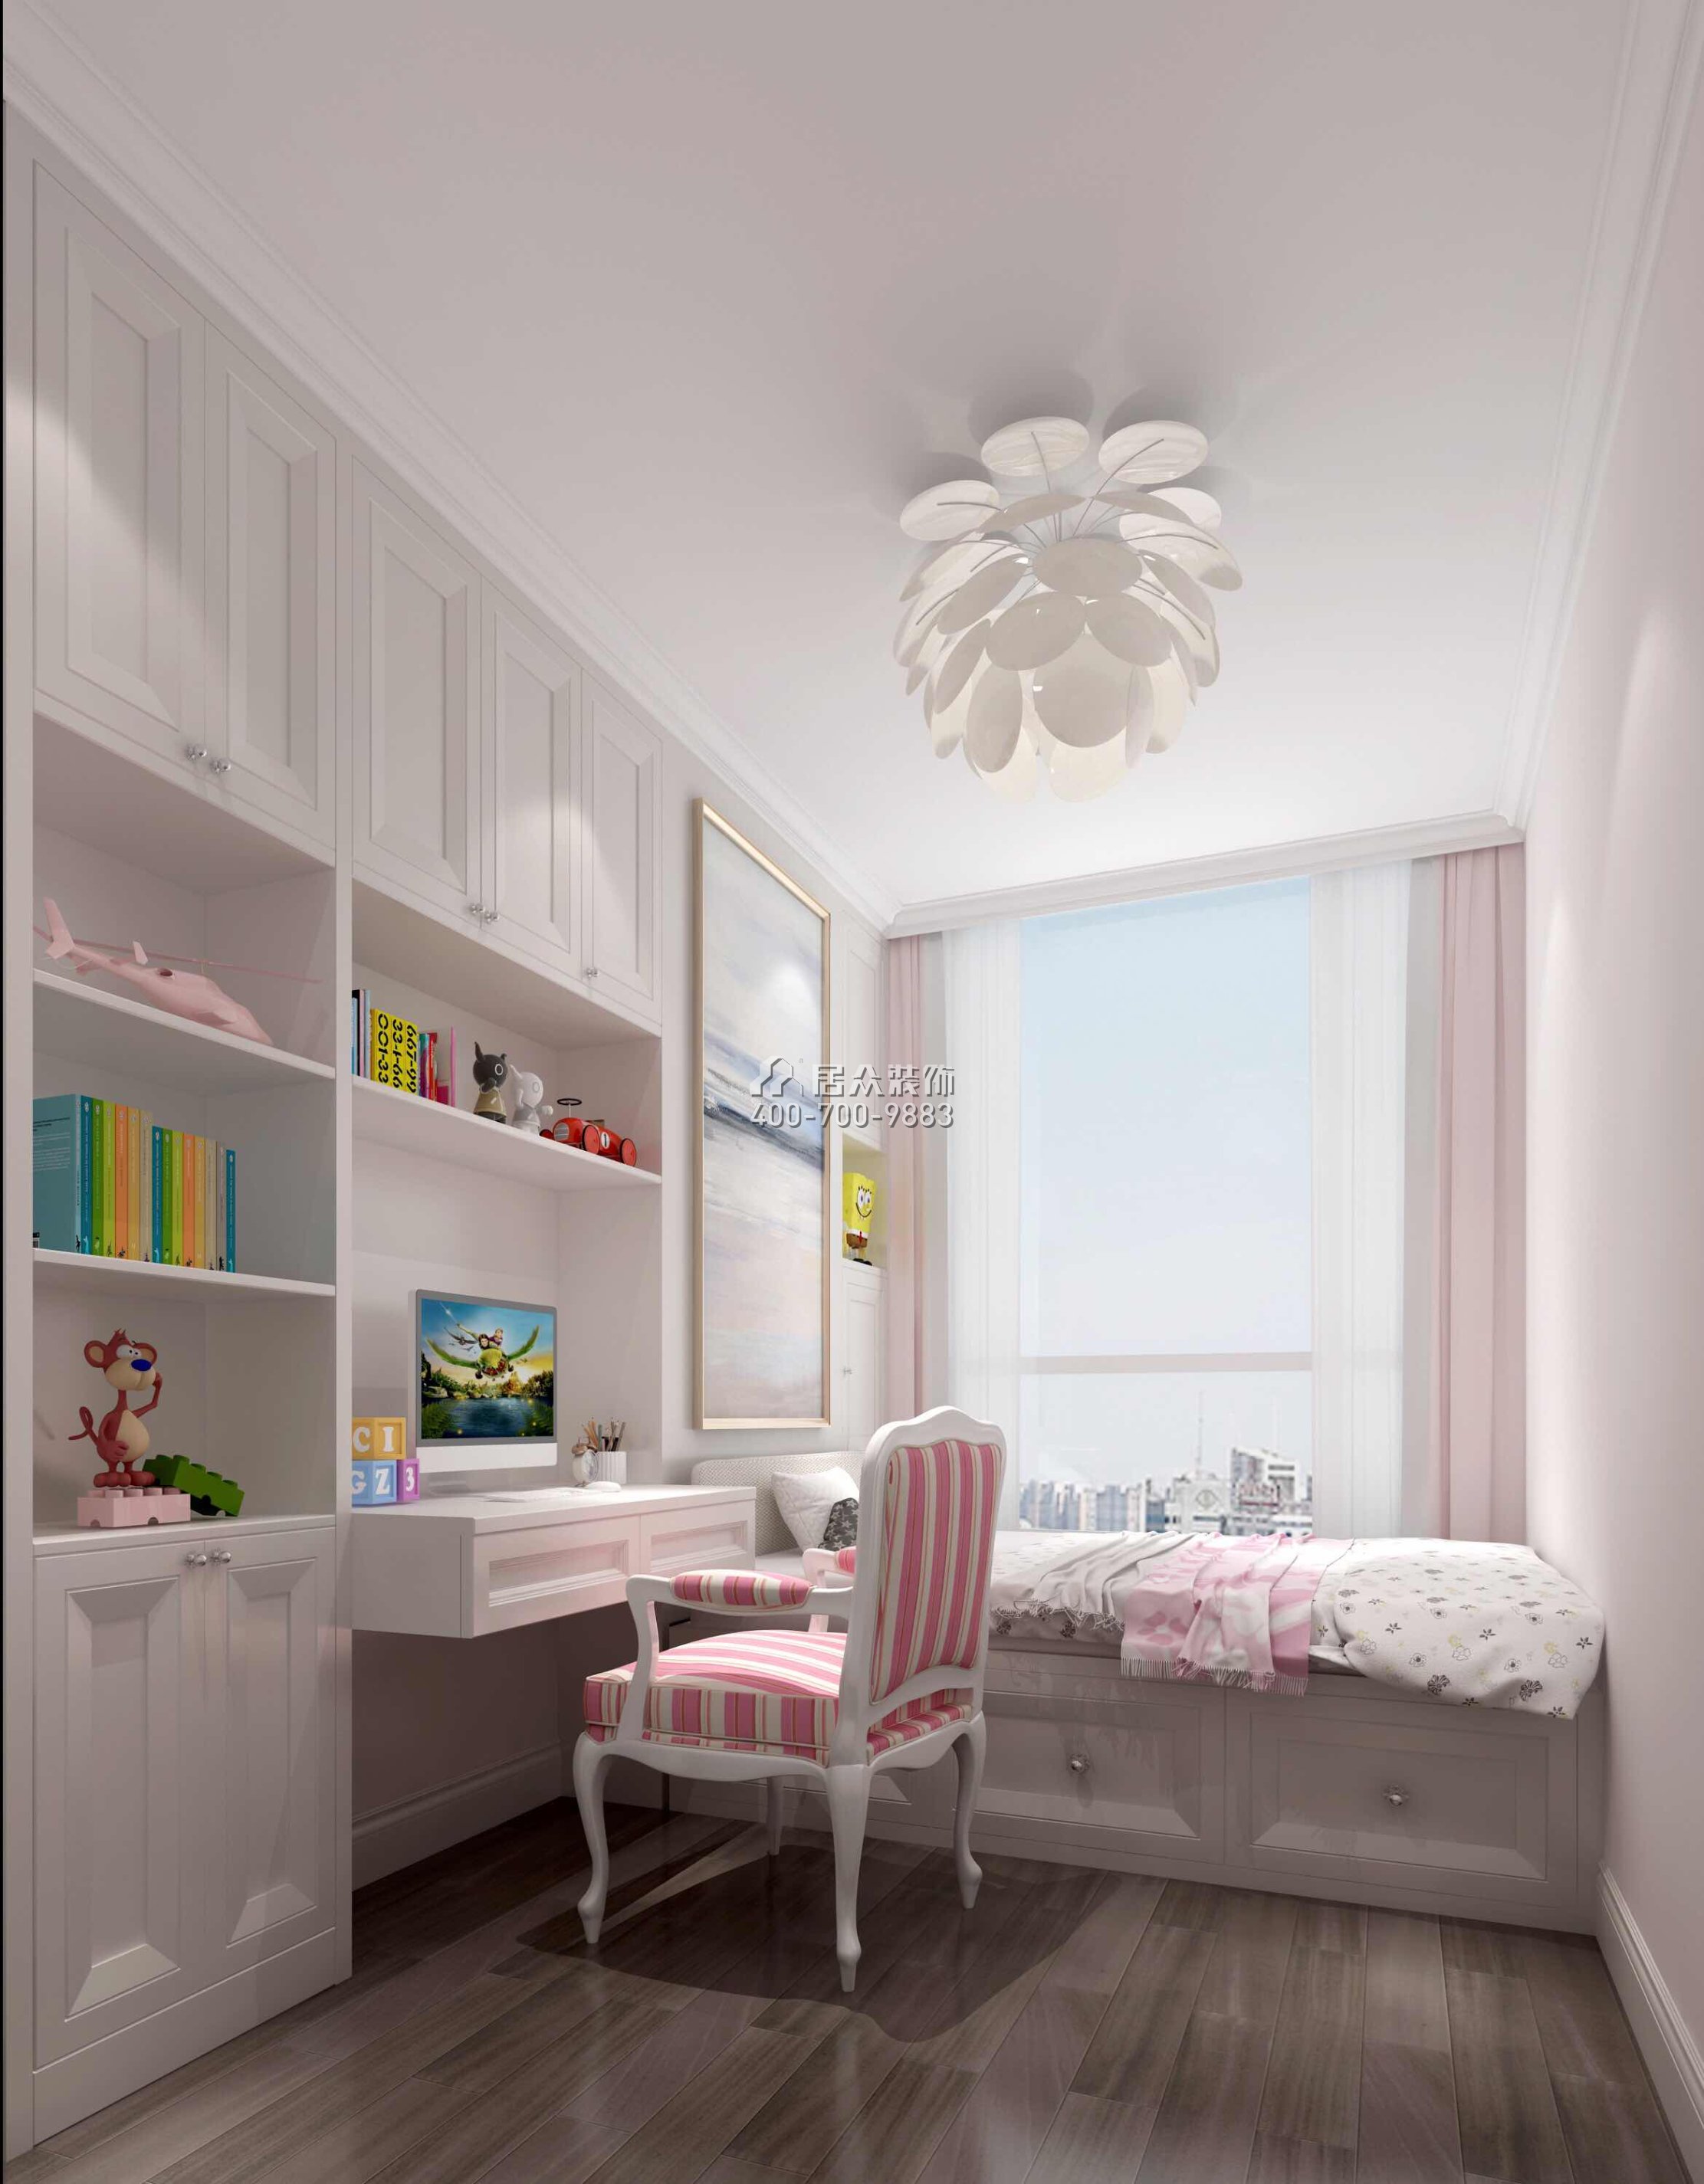 壹方中心220平方米美式风格平层户型卧室书房一体装修效果图